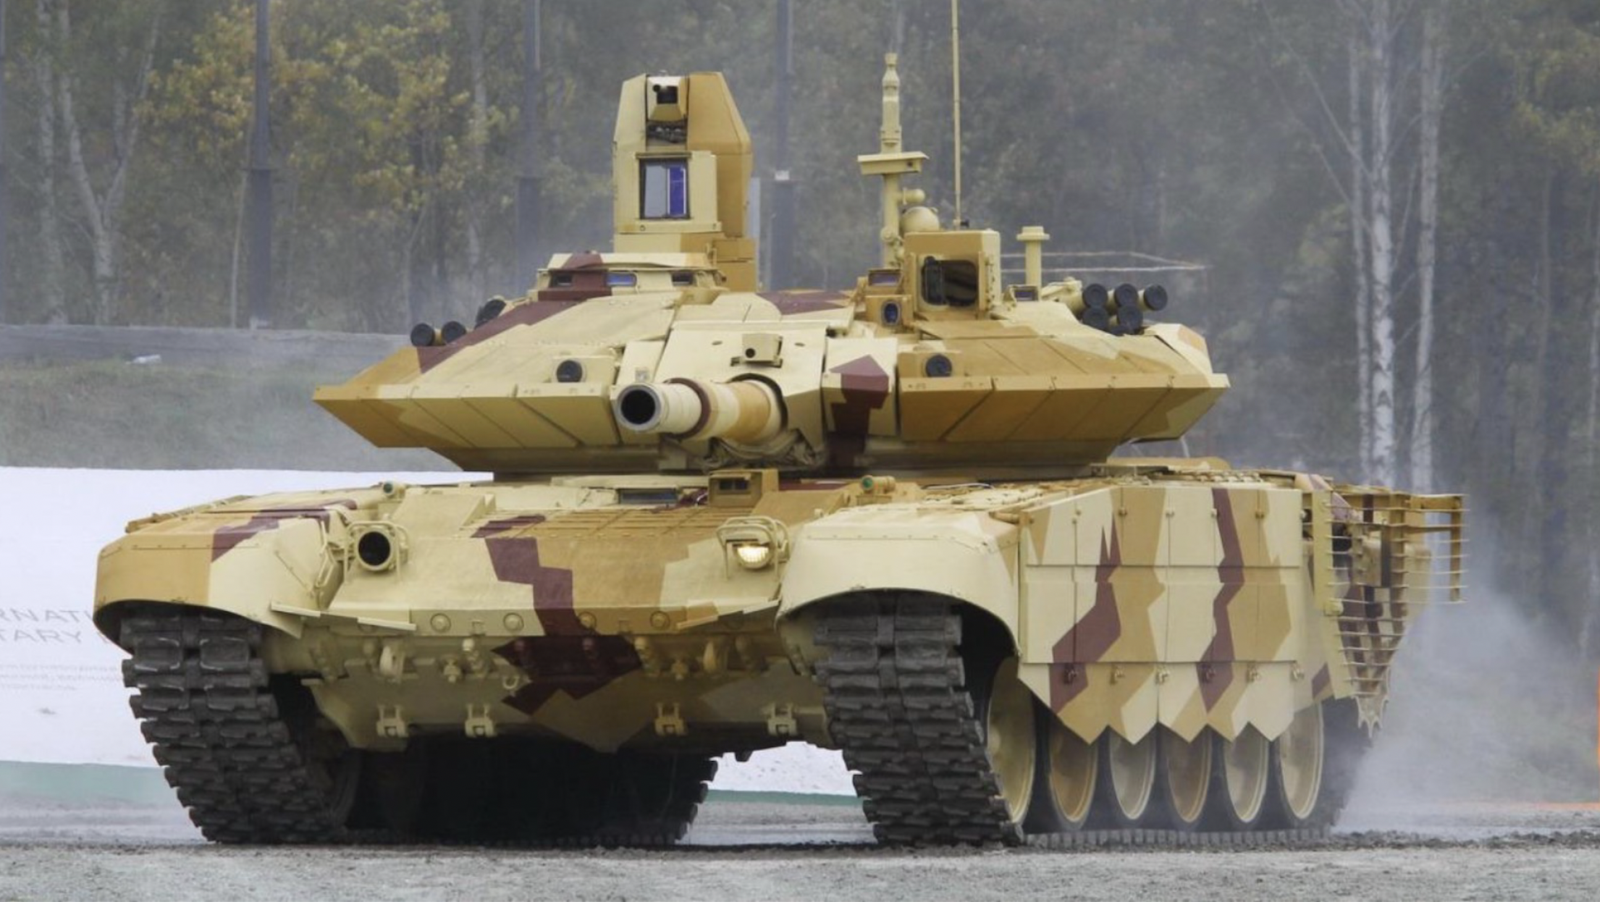 Xe tăng T-90: Khám phá loạt xe tăng T-90 được coi là một trong những chiến xe tăng hiện đại nhất trong lực lượng vũ trang quân đội. Xem xét về sức mạnh phá hủy, khả năng di chuyển, tầm nhìn...điều đó sẽ cho bạn một cái nhìn chân thực về xe tăng chiến đấu.